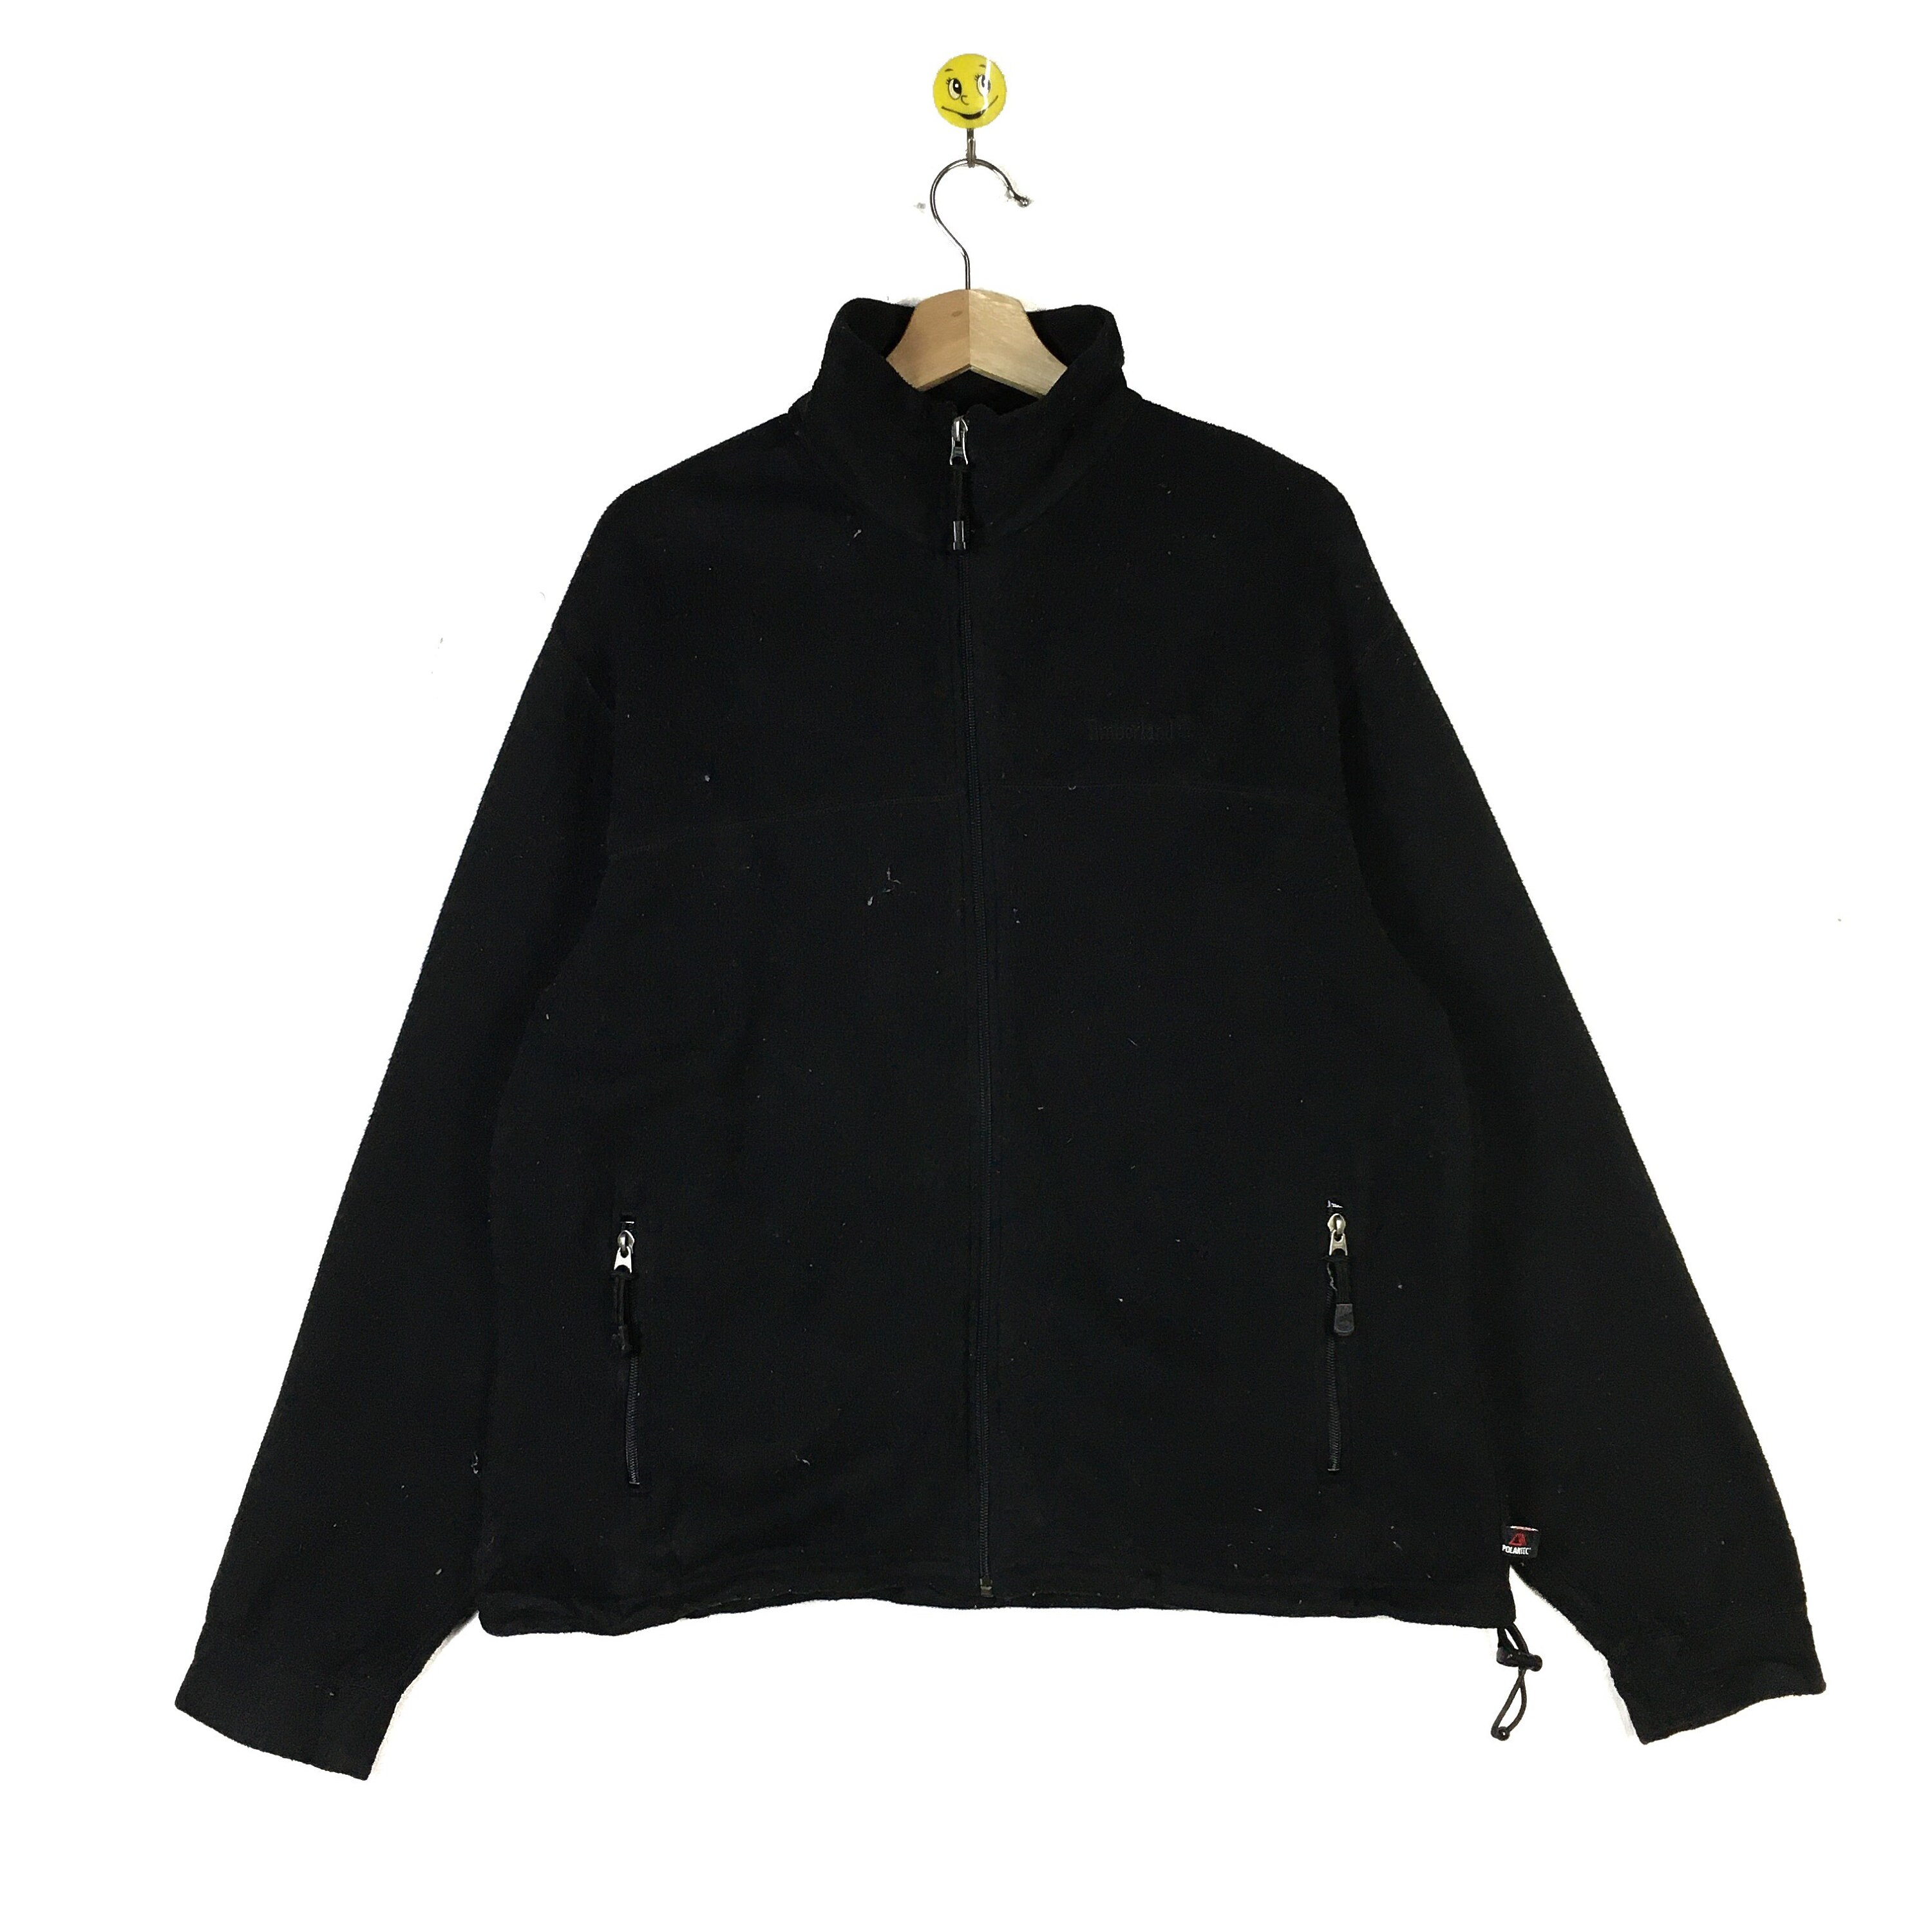 Vintage 90s Timberland Fleece Jacket Sweatshirt Timberland - Etsy